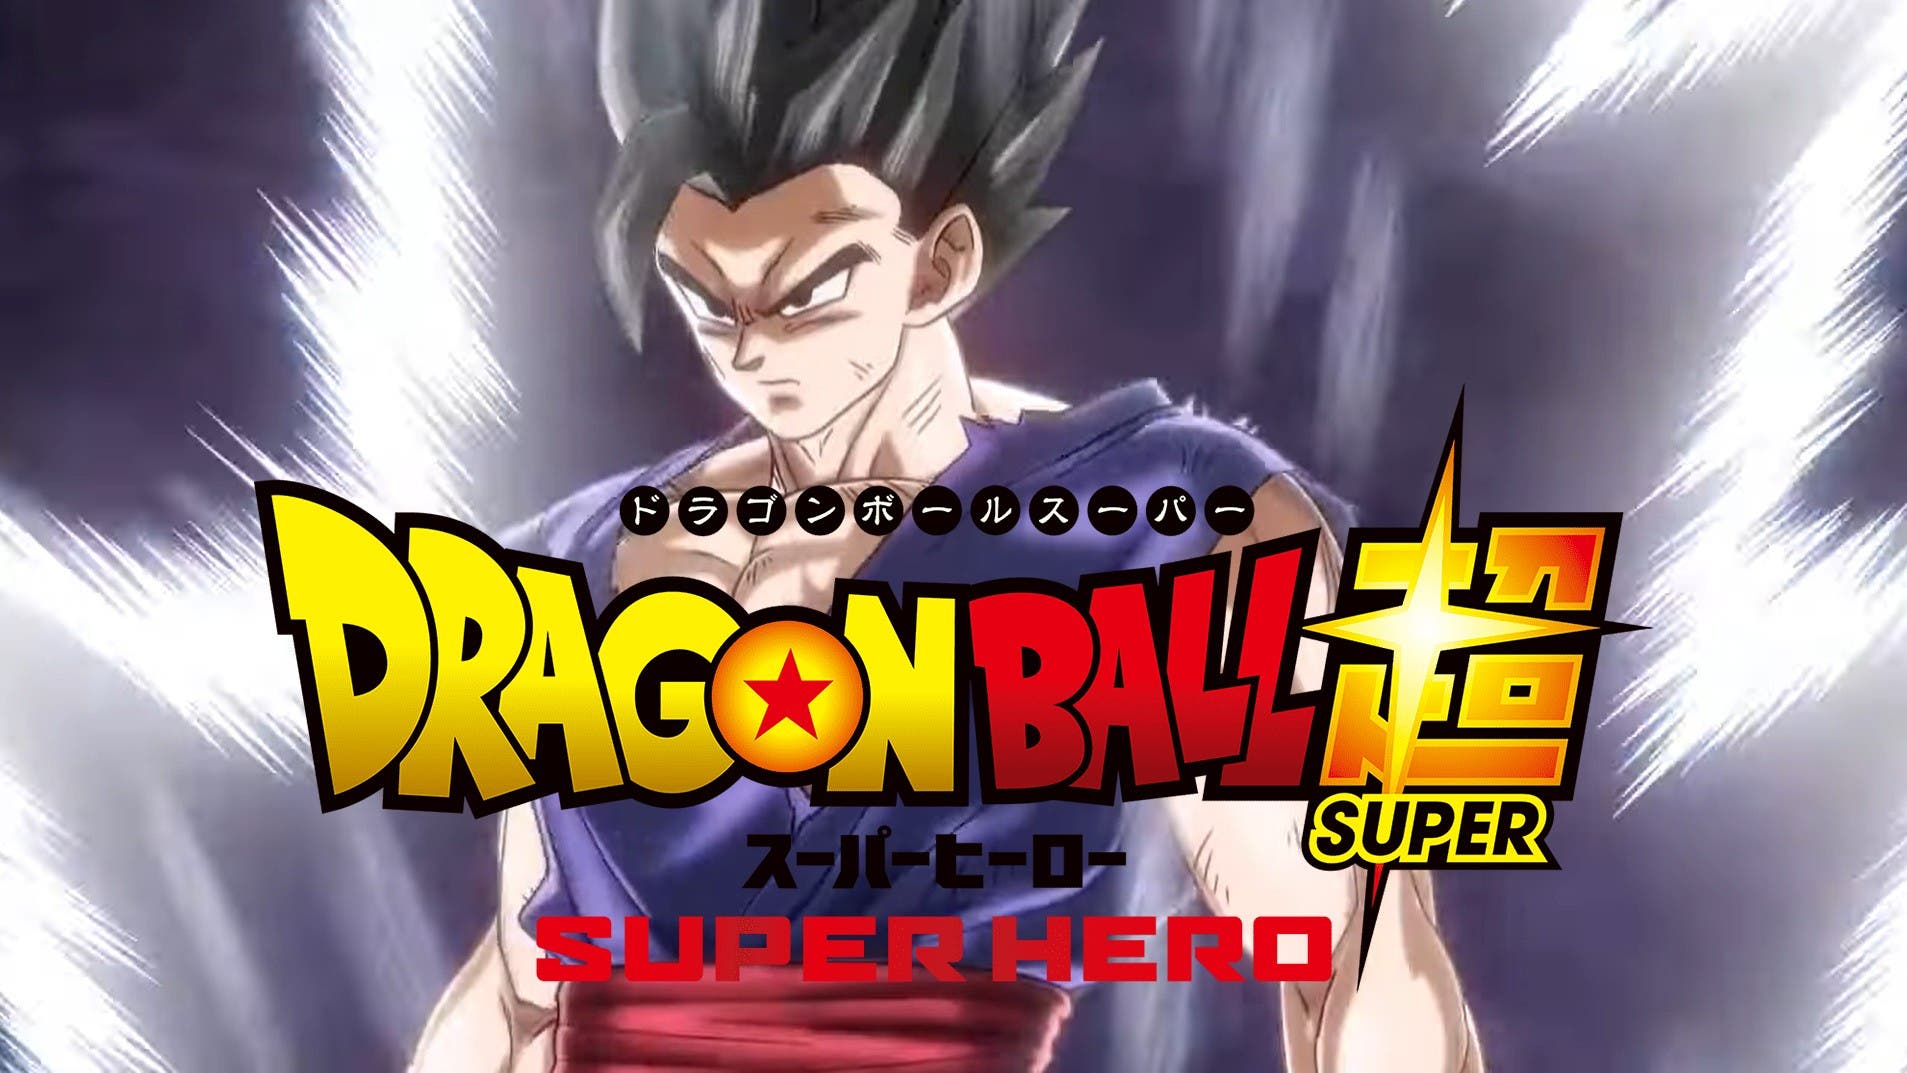 La película Dragon Ball Super: Super Hero se enfocará más en Gohan